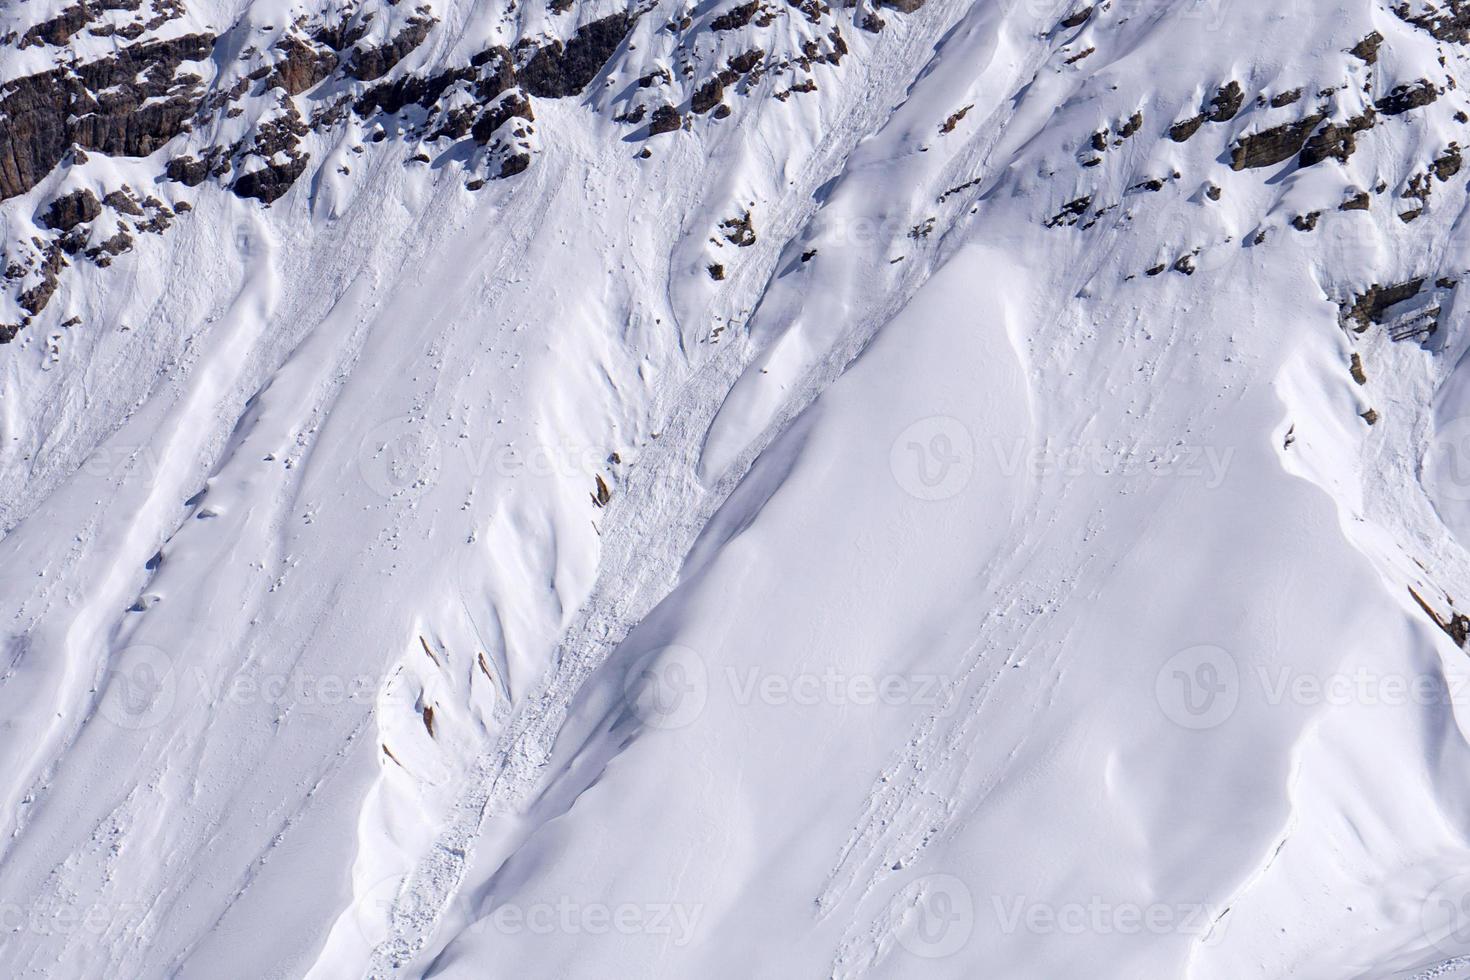 glissade de neige d'avalanche dans les montagnes des dolomites photo